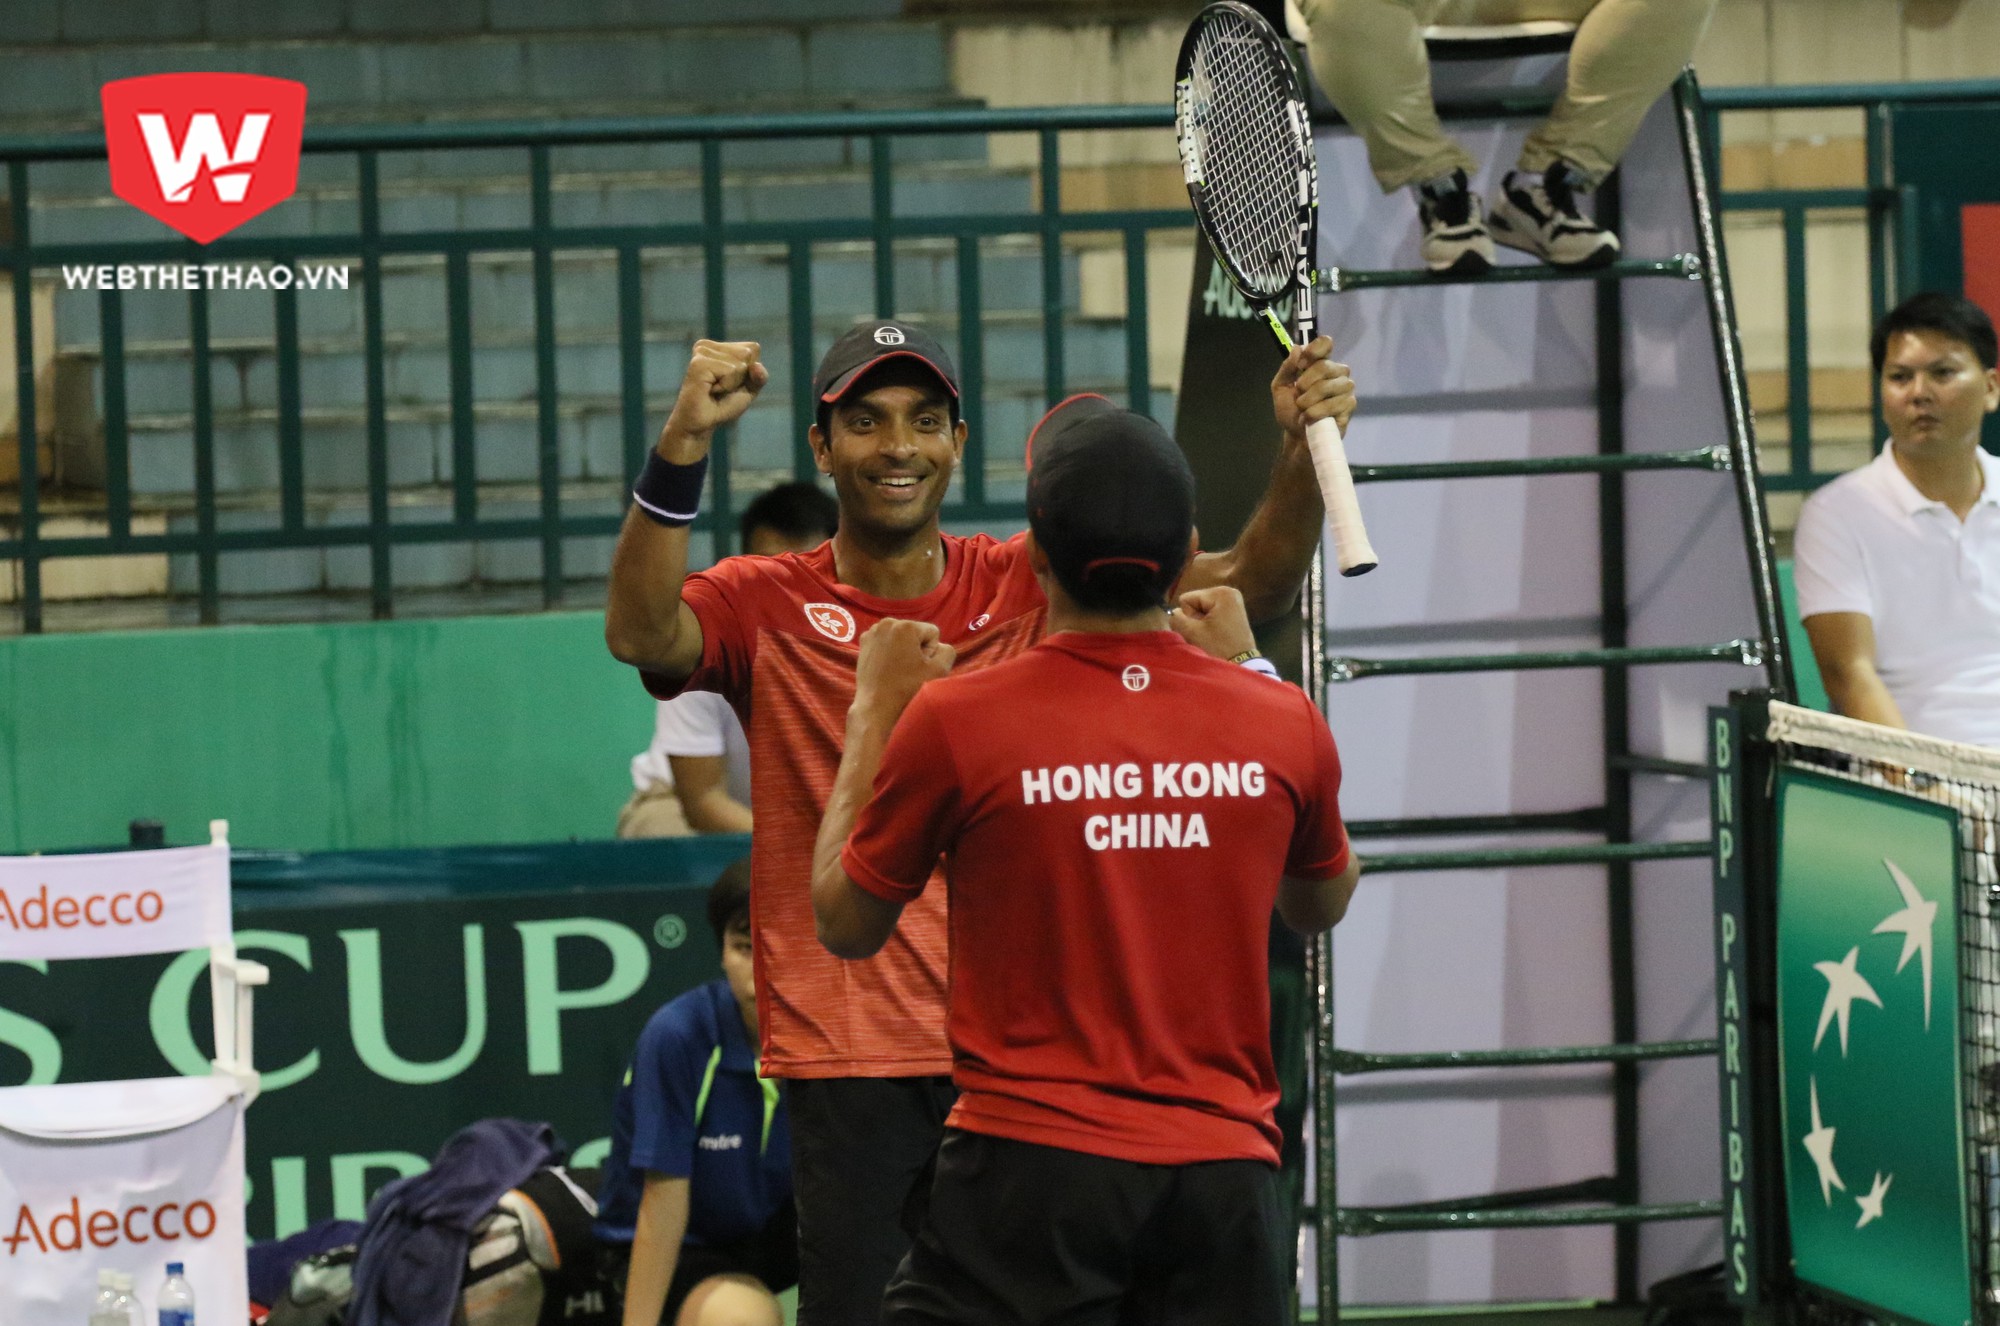 Niềm vui chiến thắng của 2 tay vợt Hong Kong sau trận đấu đầy kịch tính. Ảnh: Văn Nhân